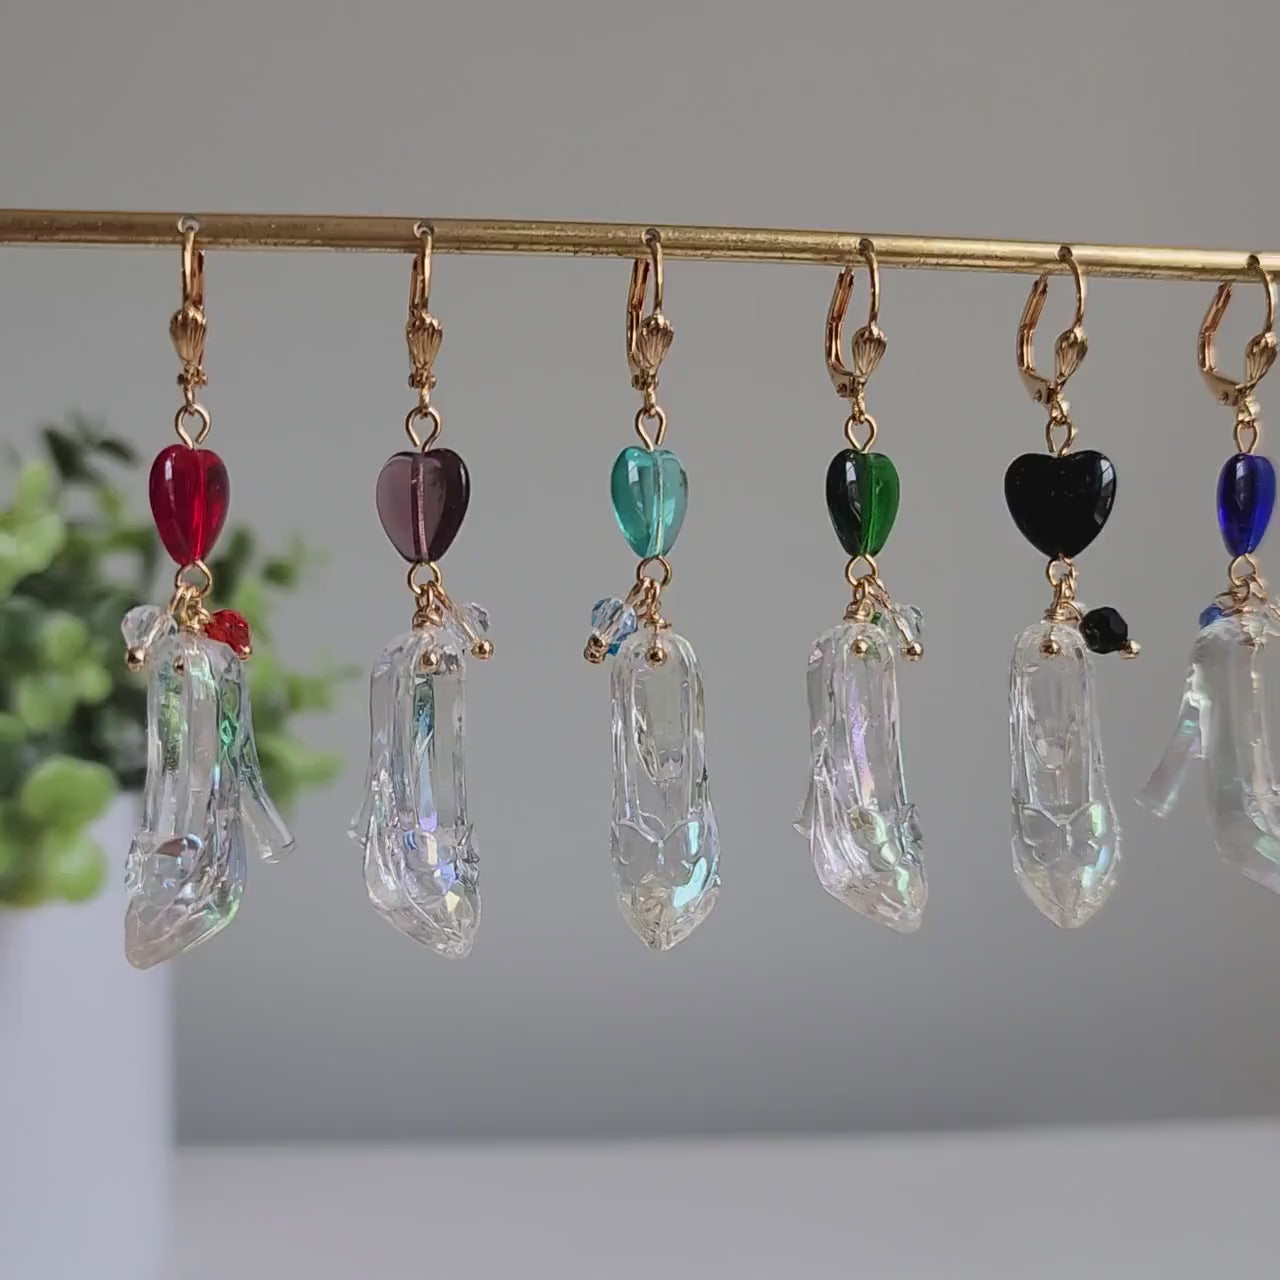 Cinderella glass slipper earrings, Sparkling glass slipper earrings, Fairytale dangle earrings